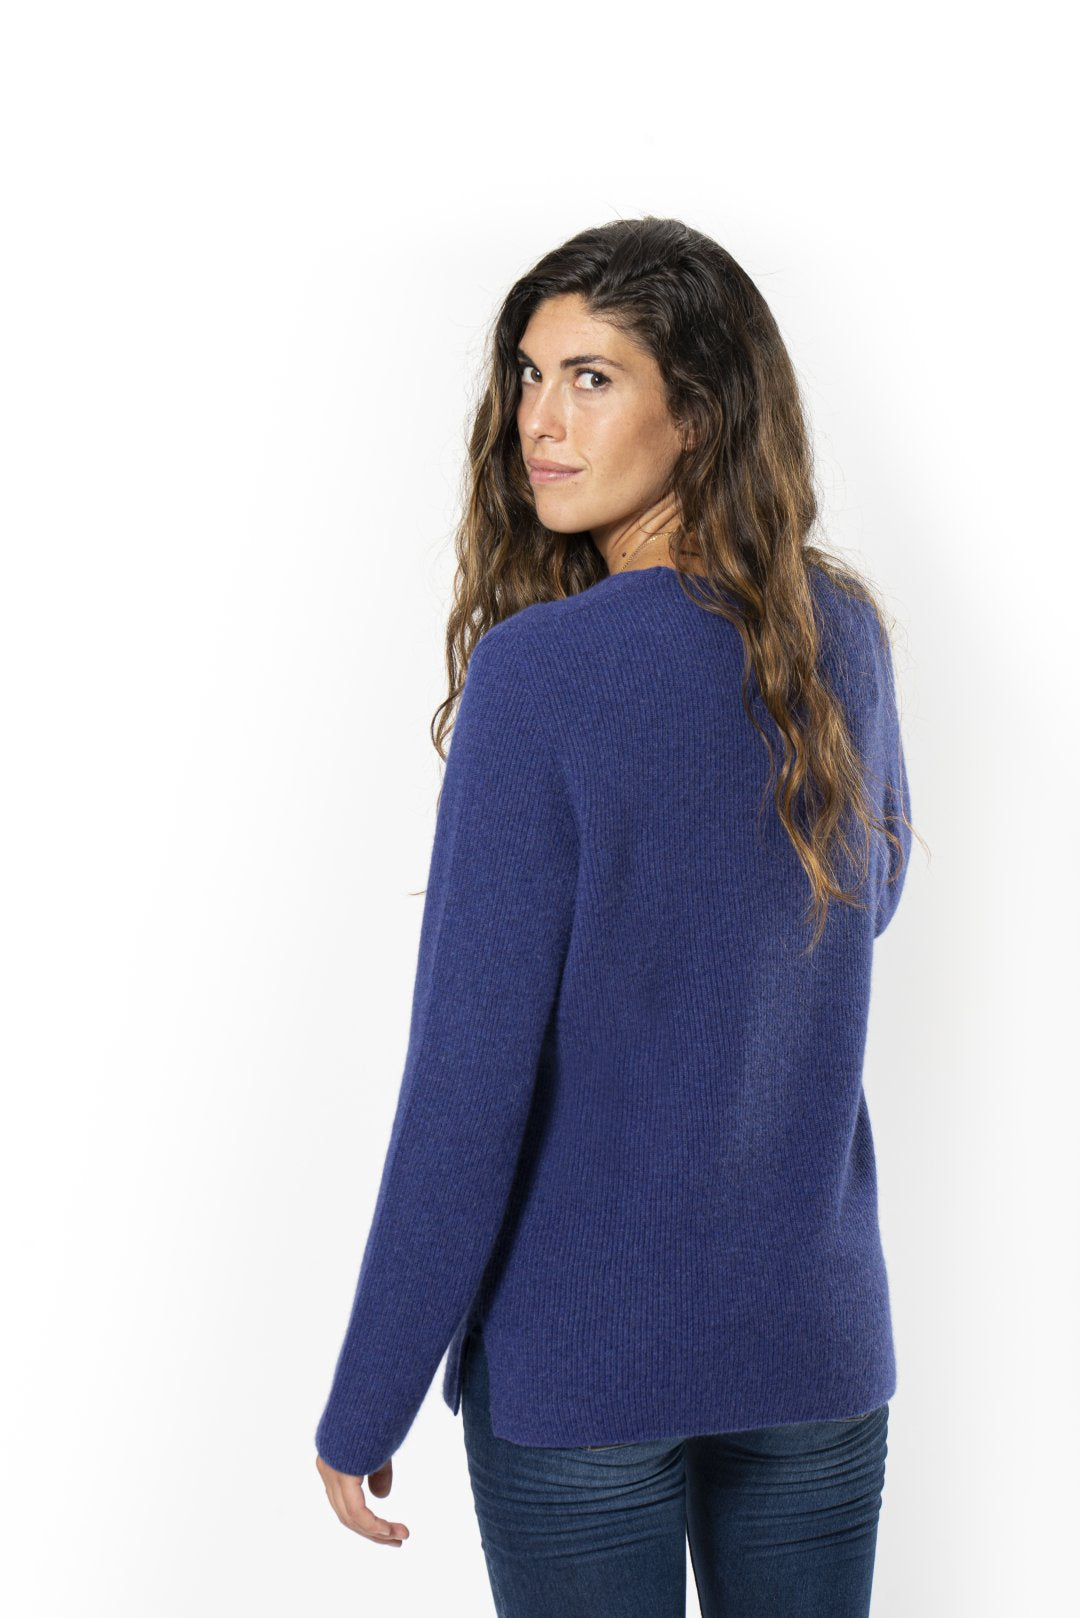 English Rib Sweater in Pure Cashmere with Bluette V-neck